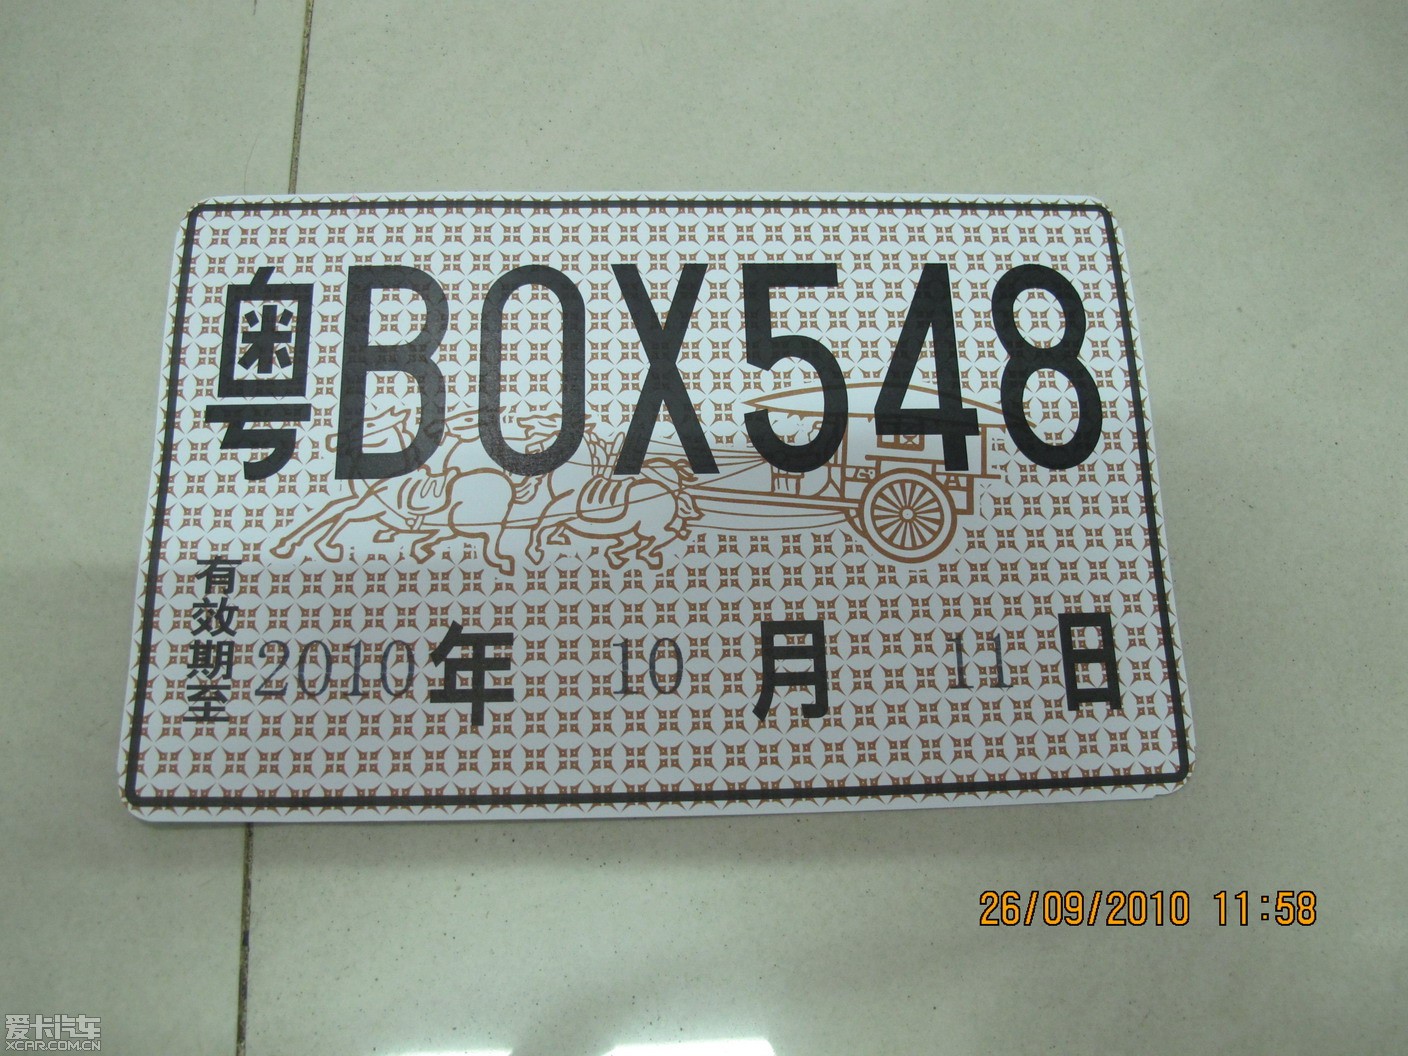 10551 爱卡币 帖子 5003 帖 注册 2007-08-23 来自 广东|深圳